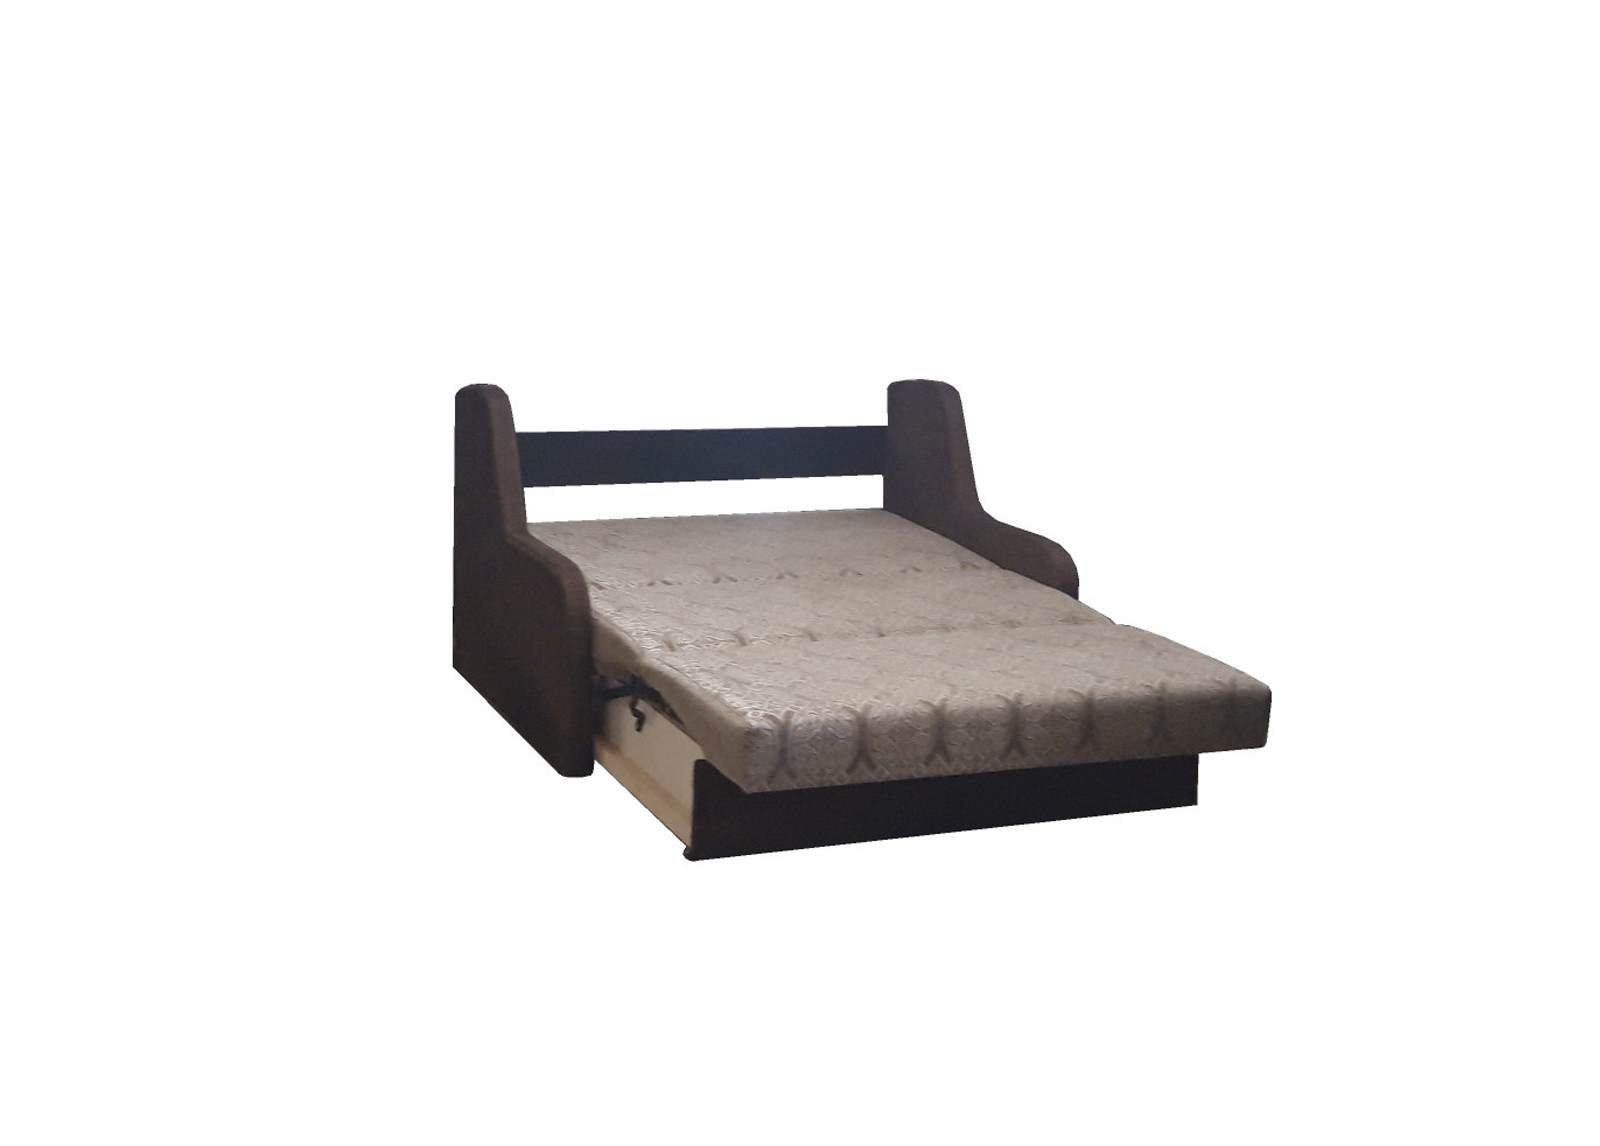 Svetainės baldai | Minkšta miegama sofa - foteliukas su patalynės dėže svetainei, vaikų, jaunuolio kambariui BL48